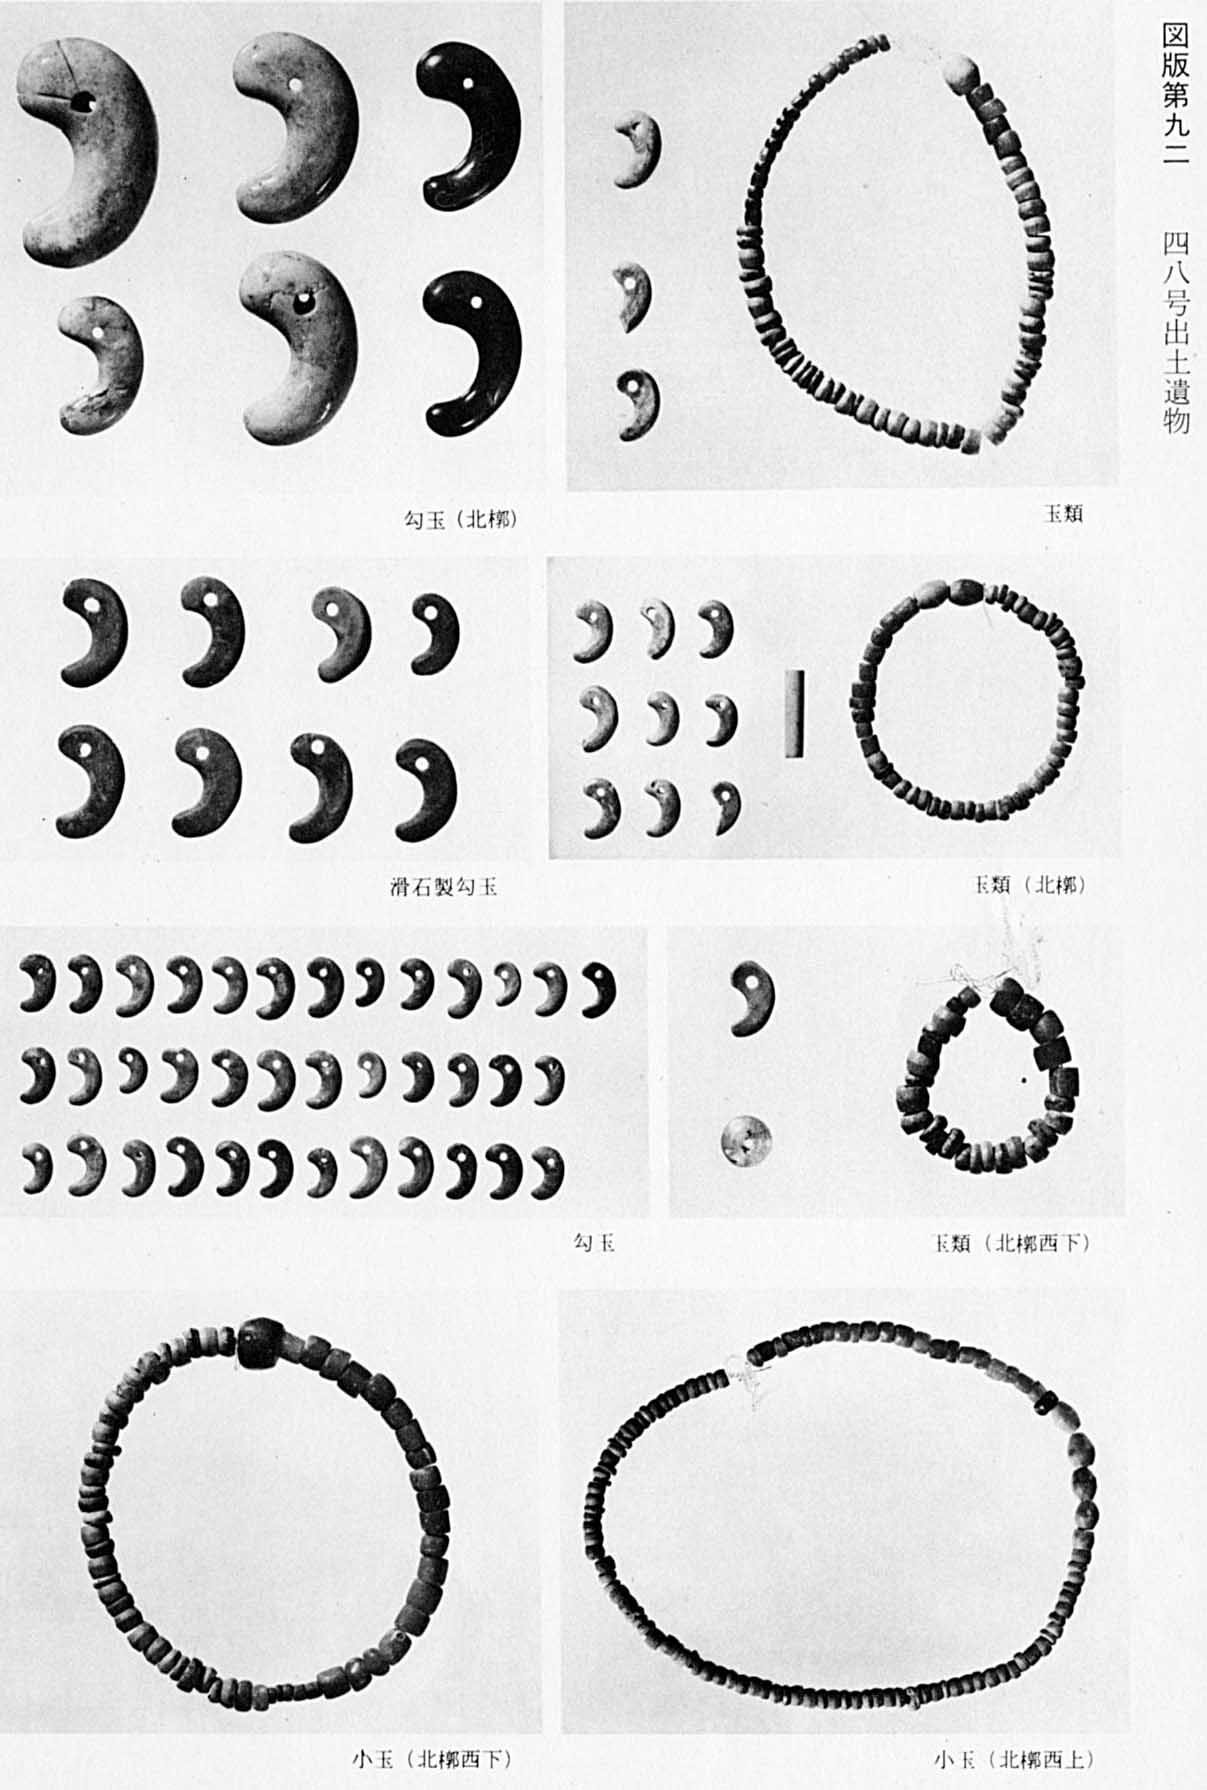 大小様々な勾玉と玉や小玉で作られた円形のアクセサリーが撮影されている8枚のモノクロ写真（図版92 48号出土遺物）